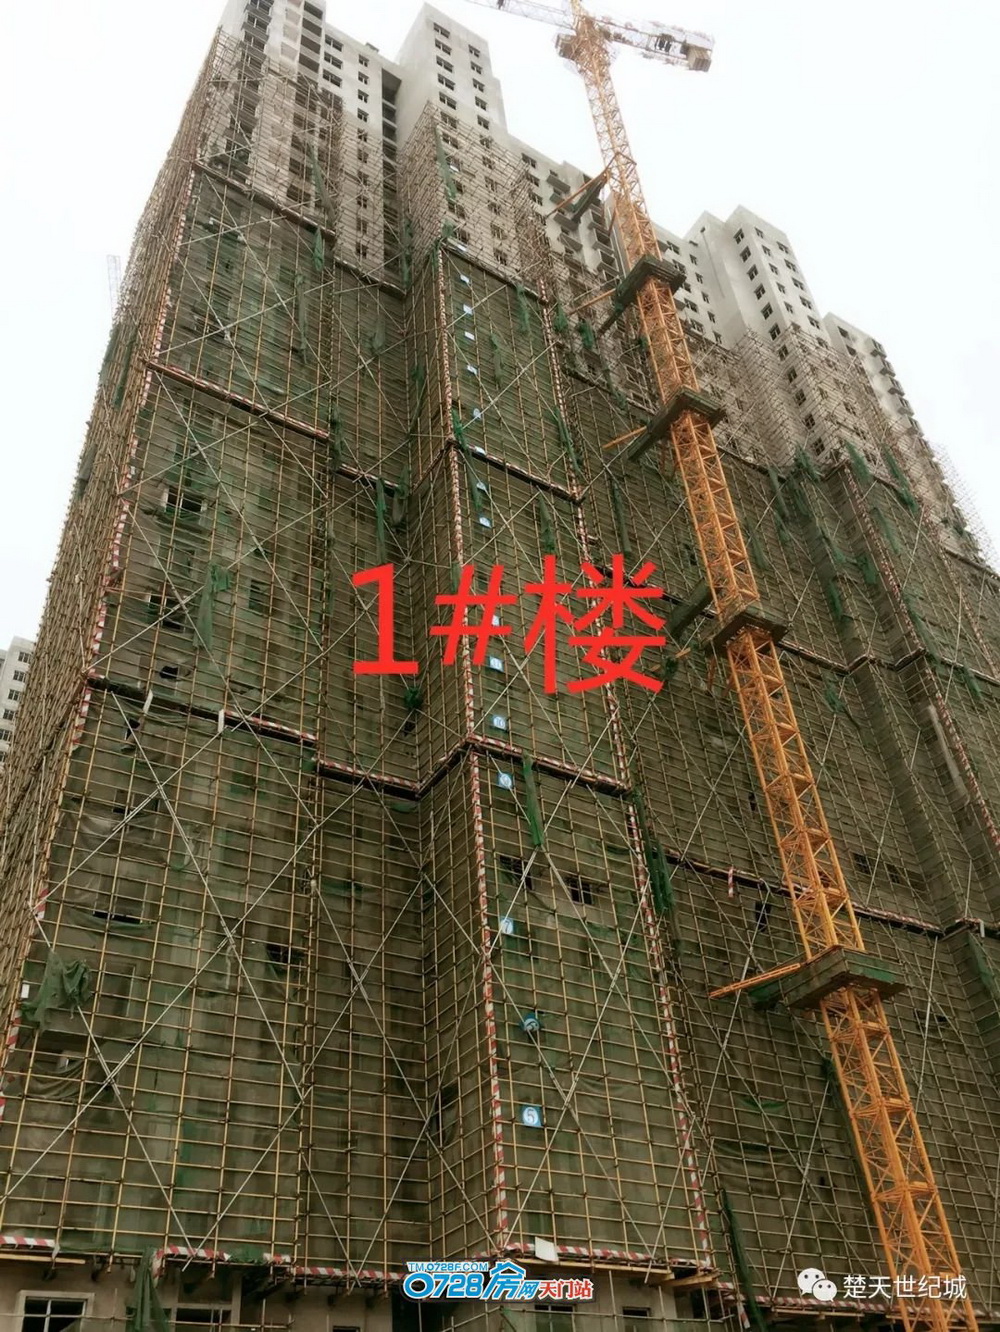 楚天世纪城2019-11-30工程进度1号楼   粉刷完毕，进入装修阶段